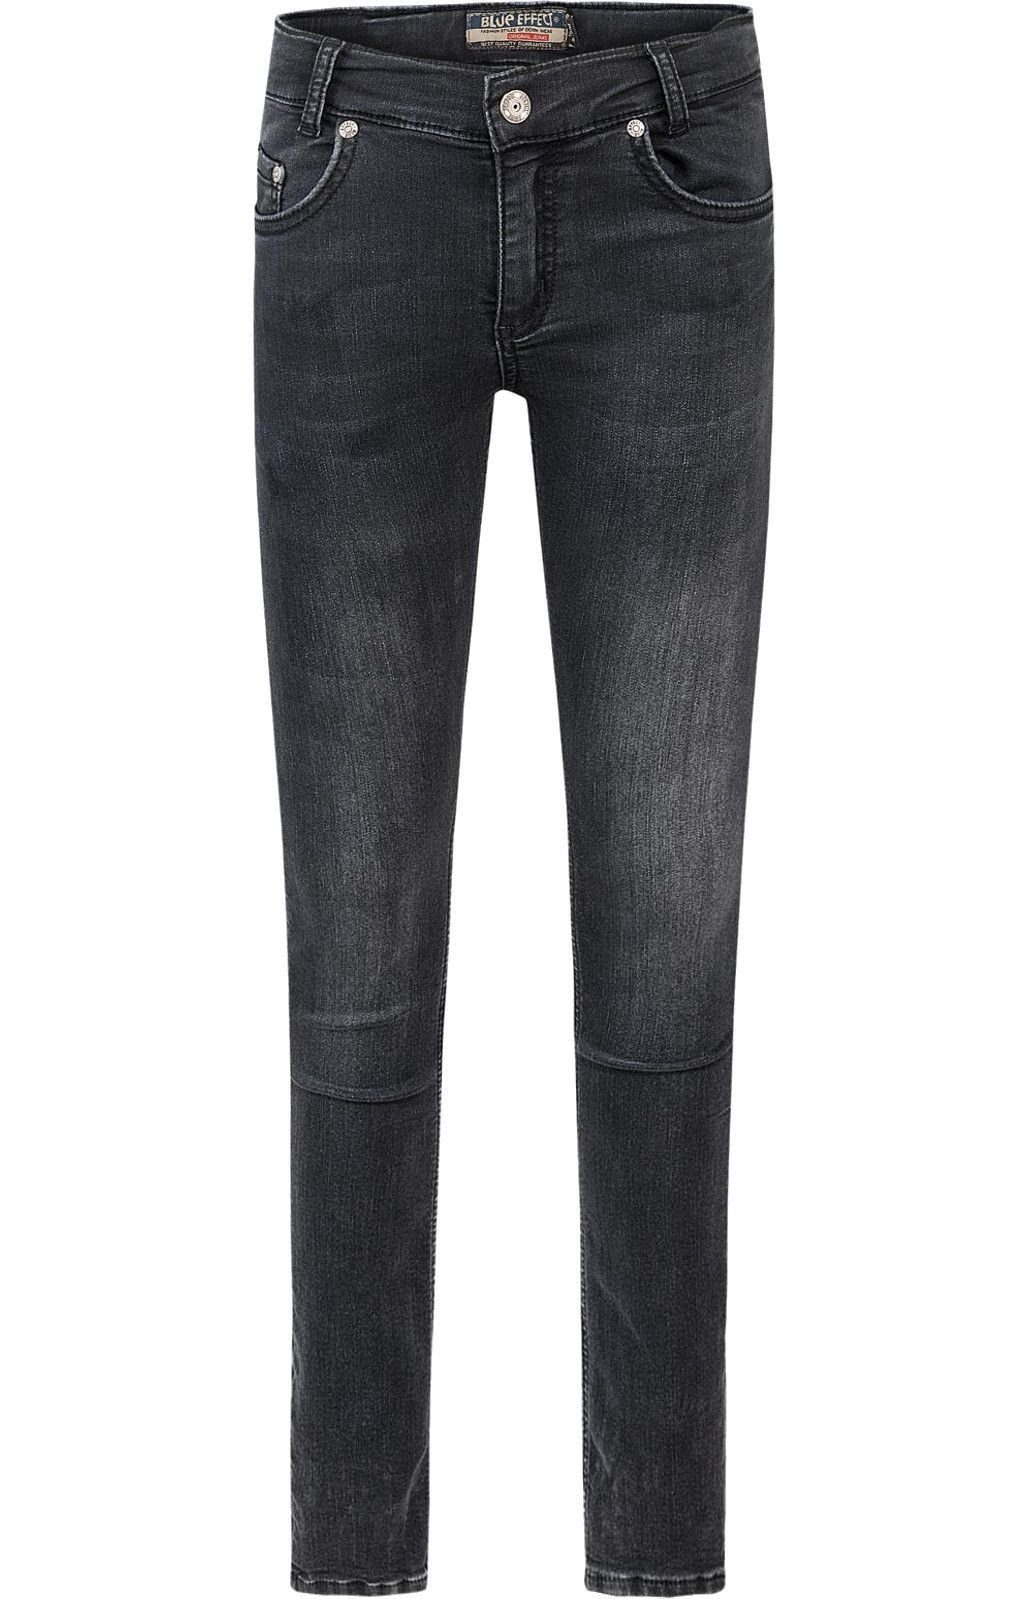 Skinny ultrastretch black Hose regular fit Jeans Regular-fit-Jeans BLUE EFFECT